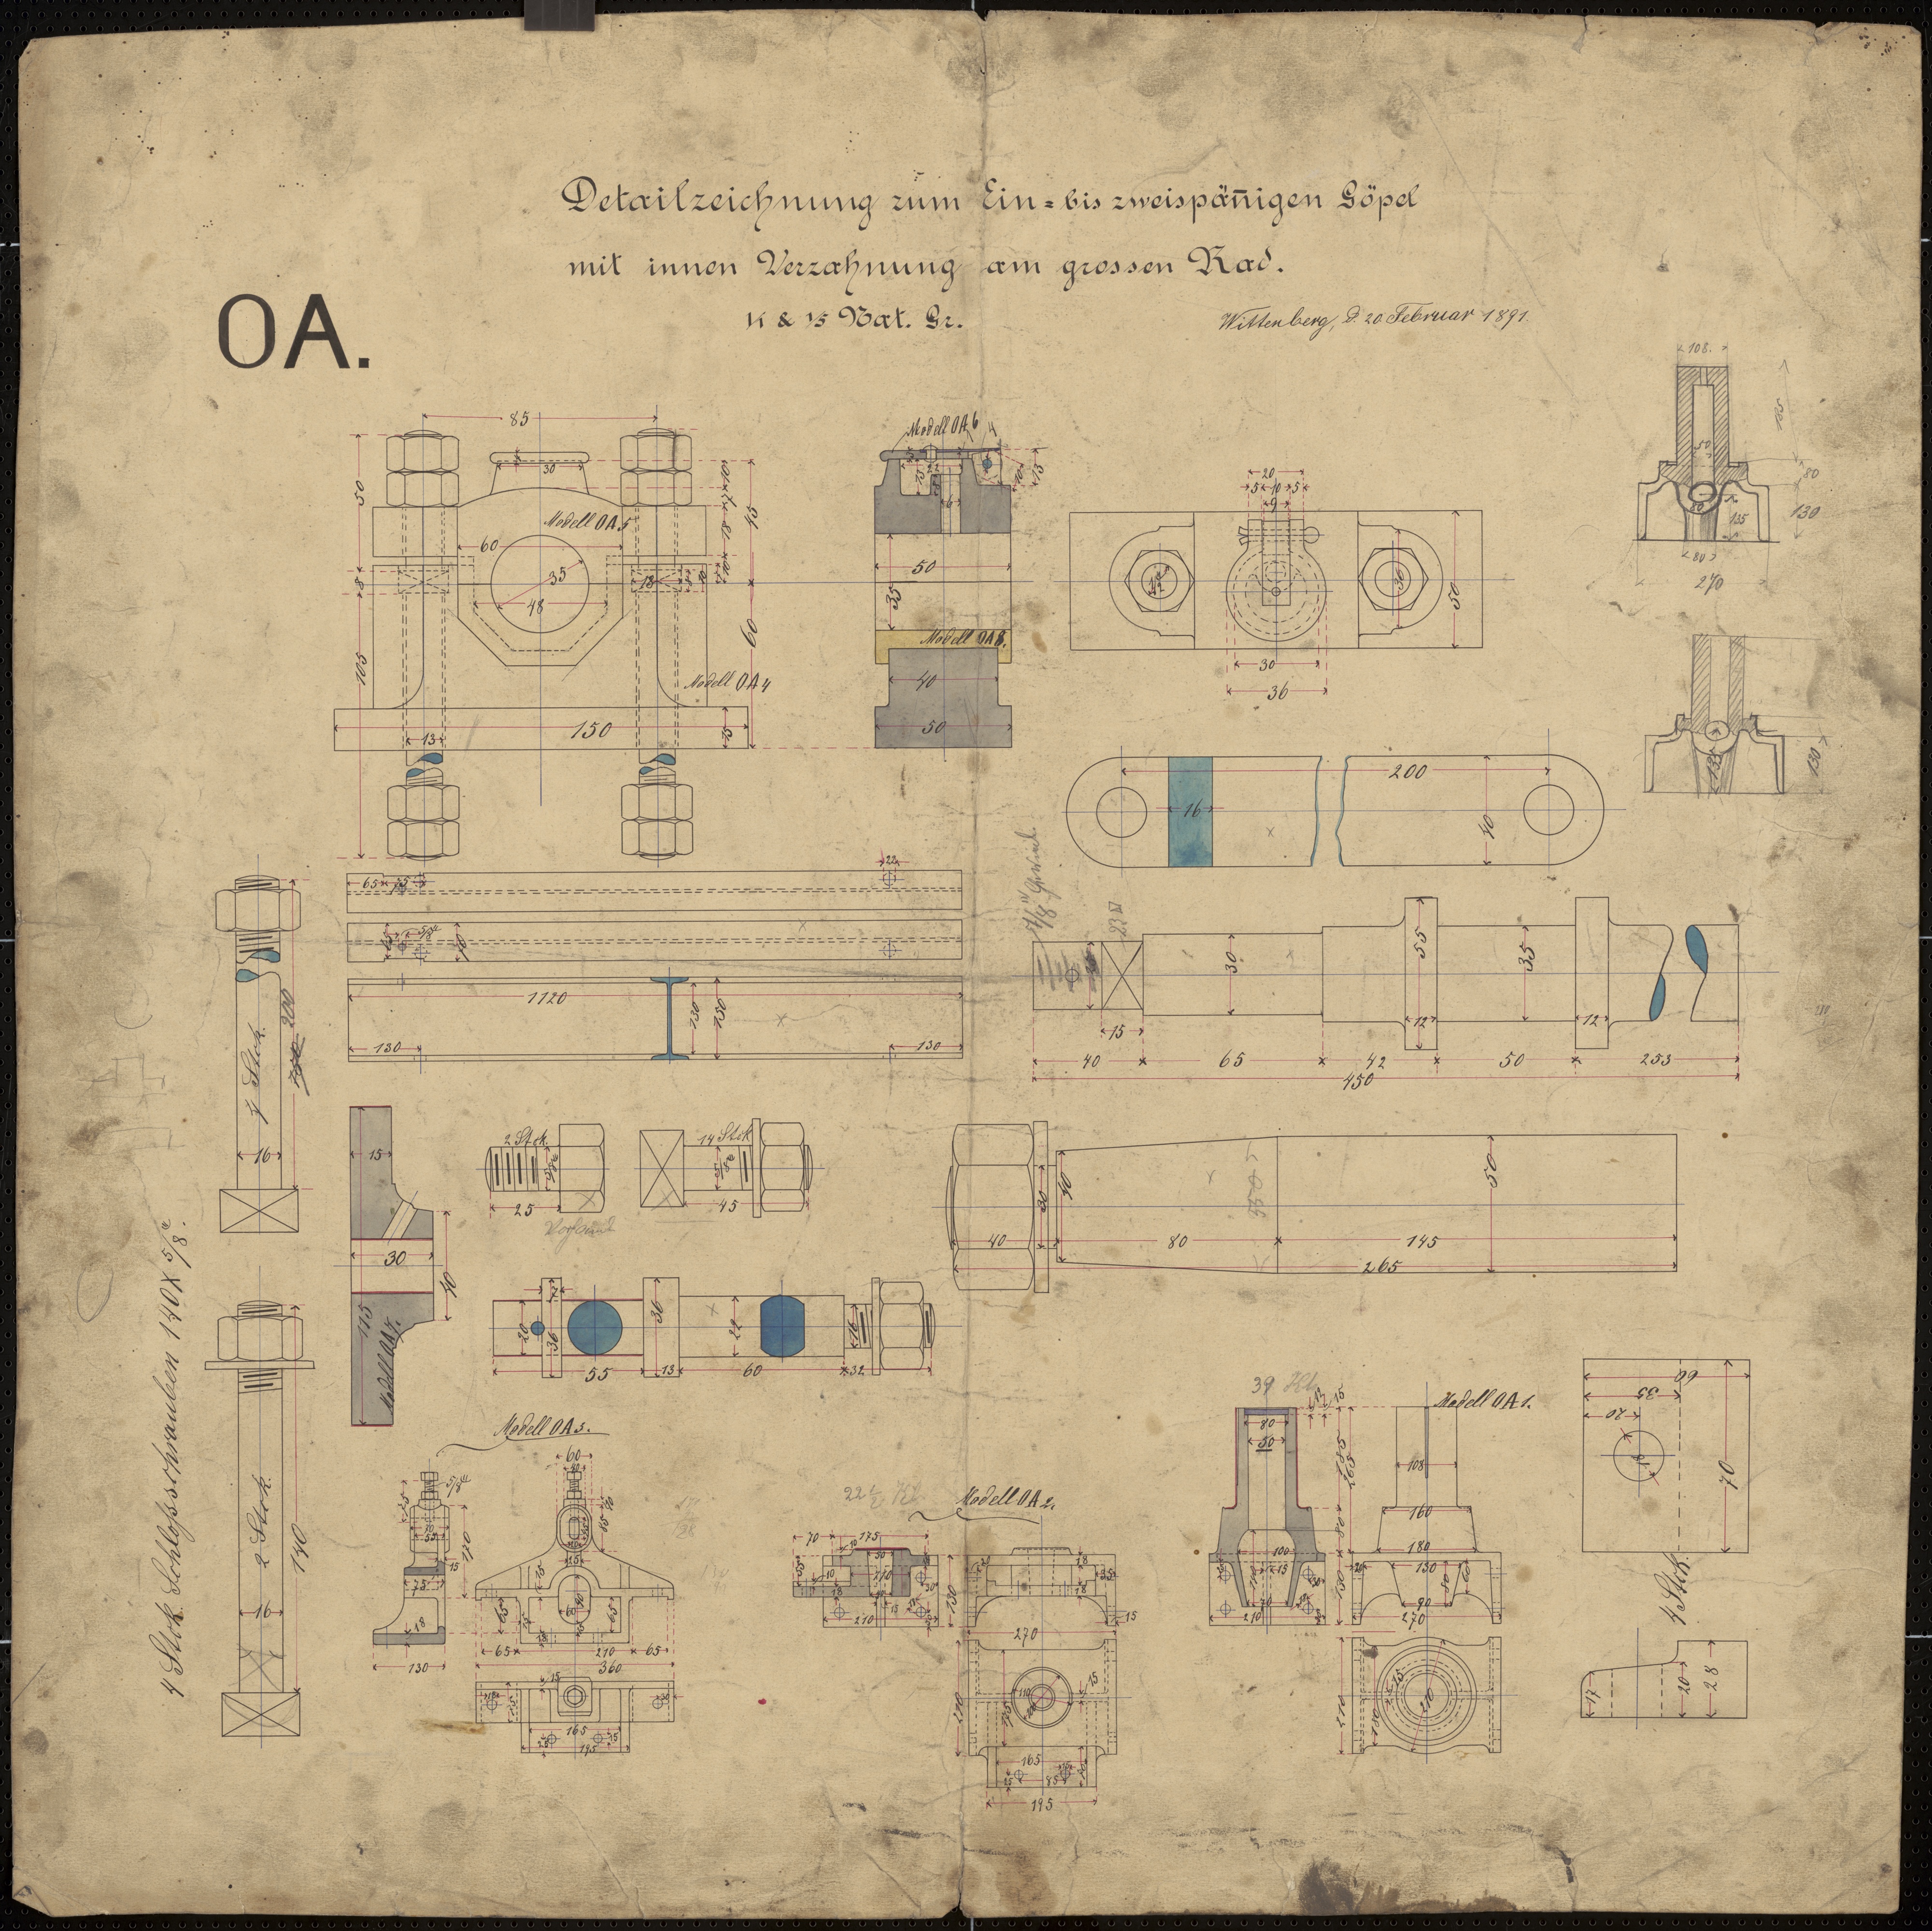 Technische Zeichnung : OA Detailzeichnung zum ein- bis zweispännigen Göpel mit innen Verzahnung am großen Rad  (Stiftung Deutsches Technikmuseum Berlin CC BY-SA)